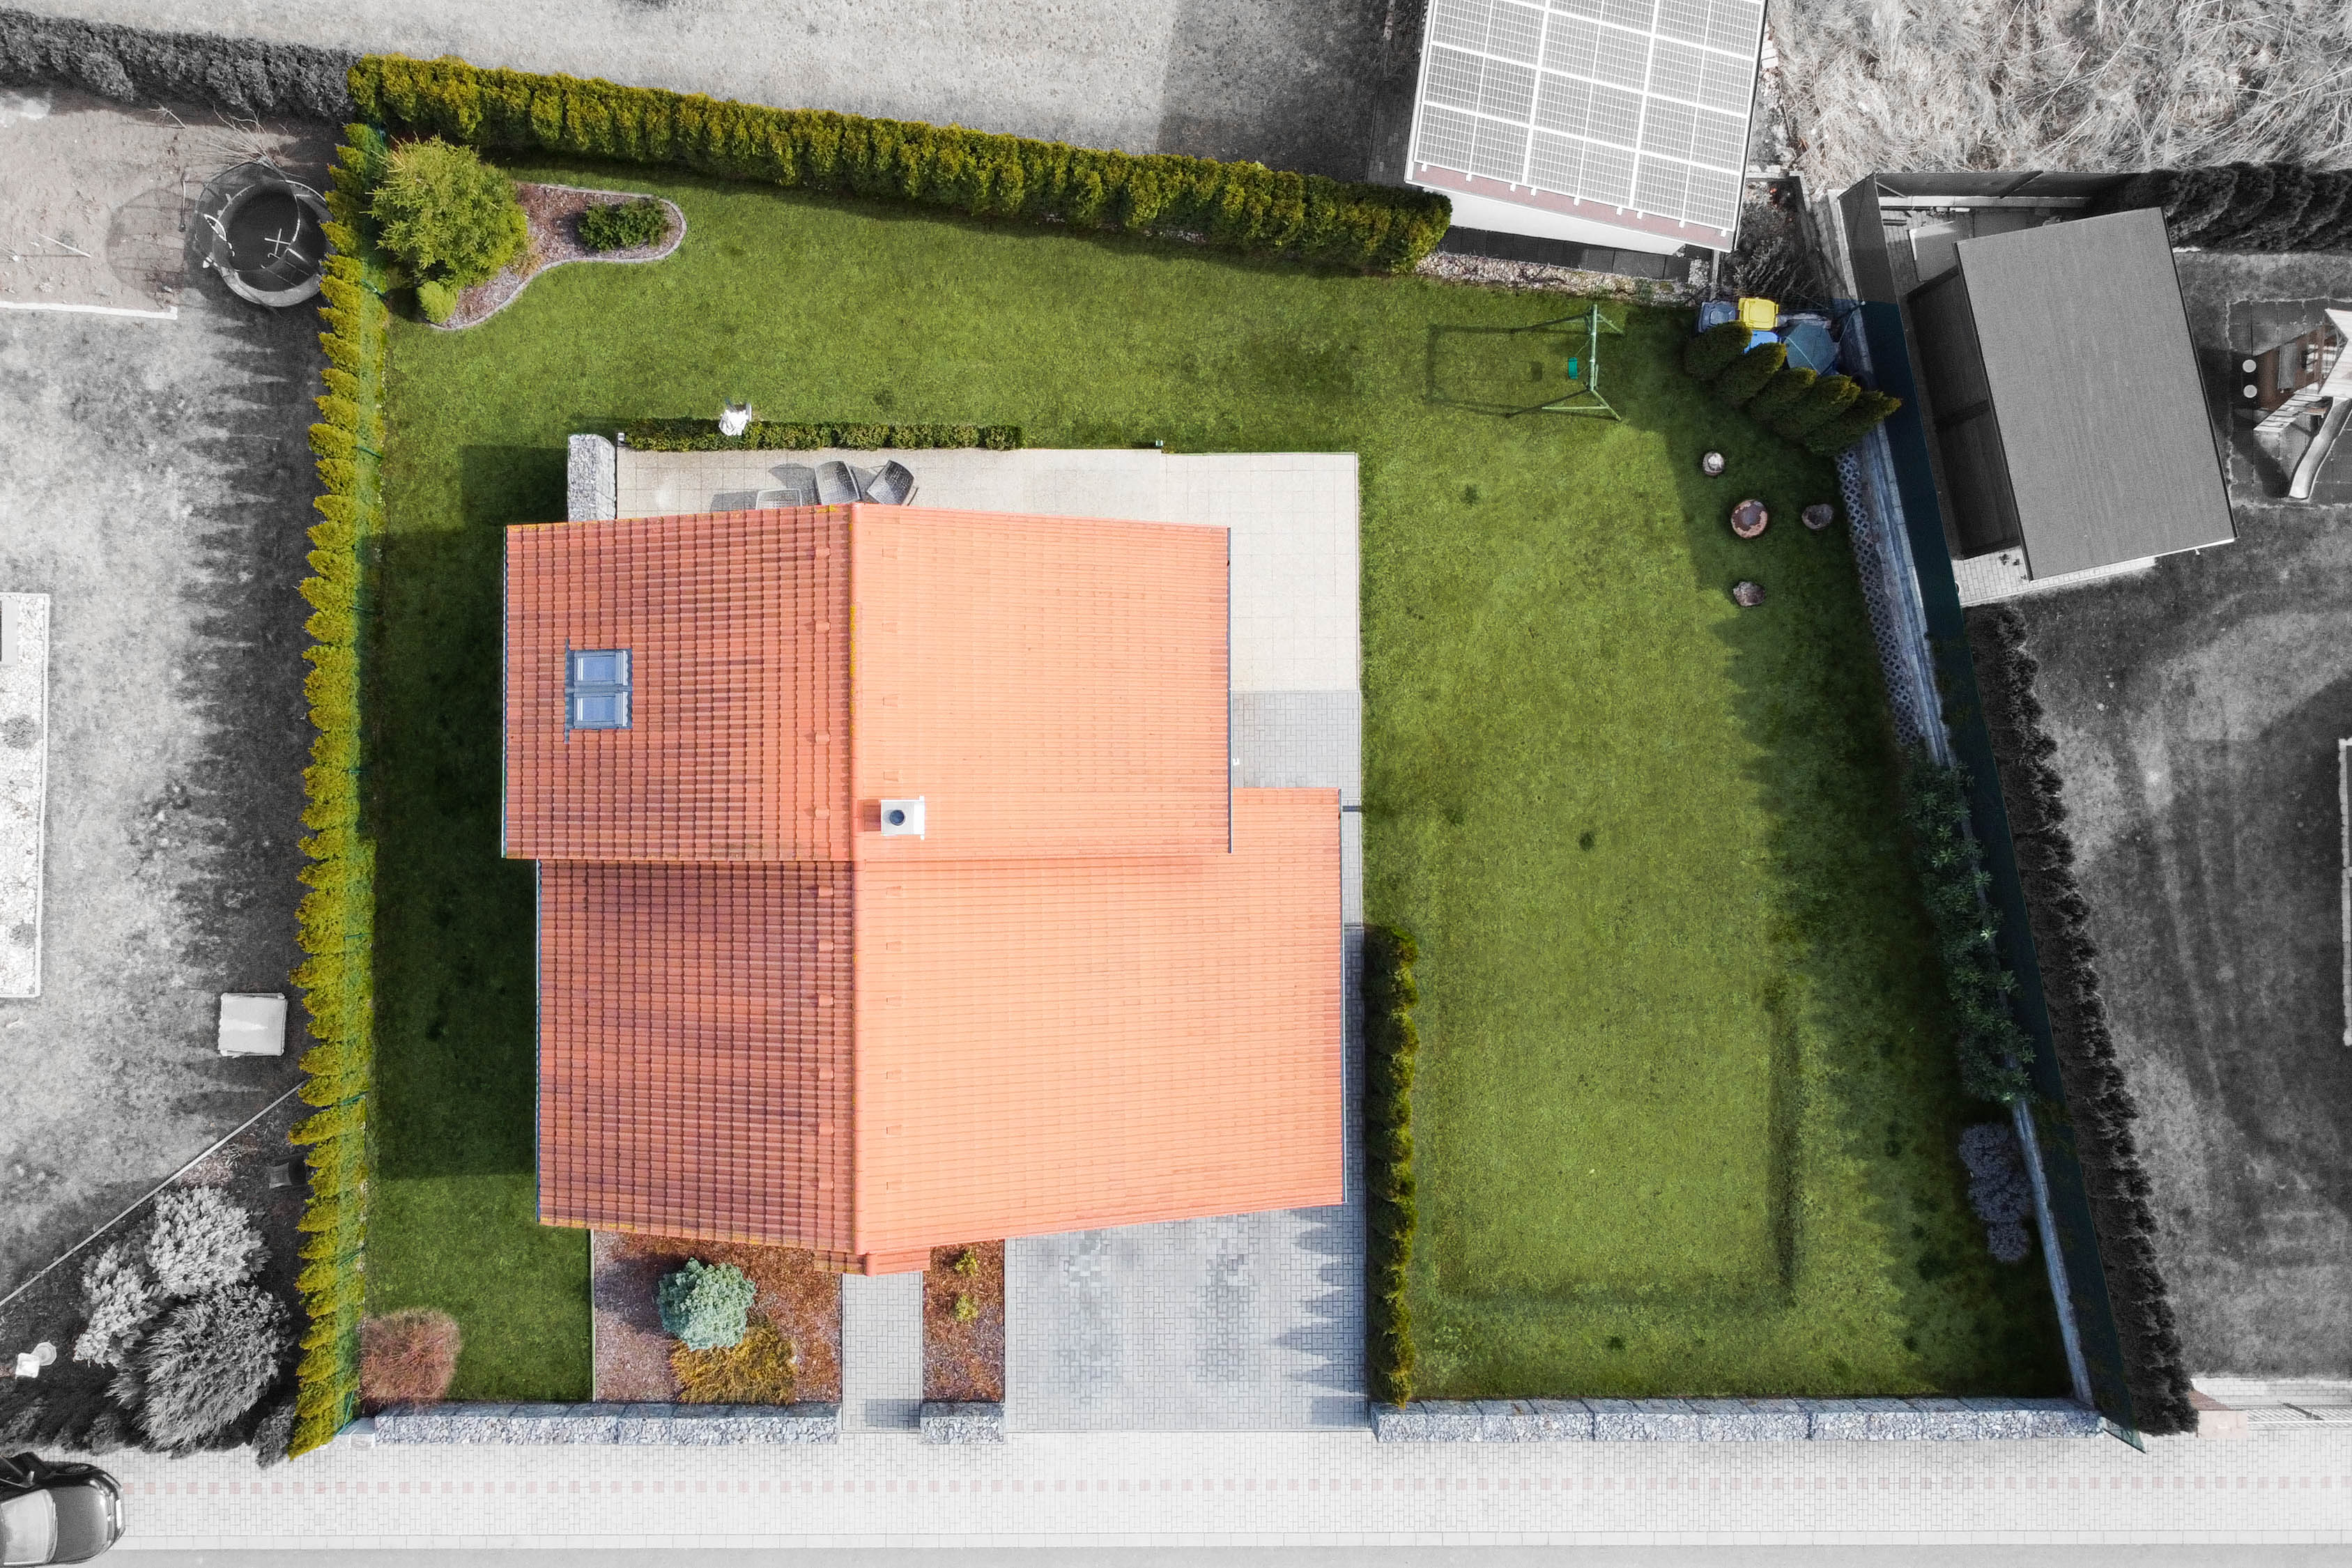 zahrada domu z dronu s vyznačením hranic pomocí černobílého okolí